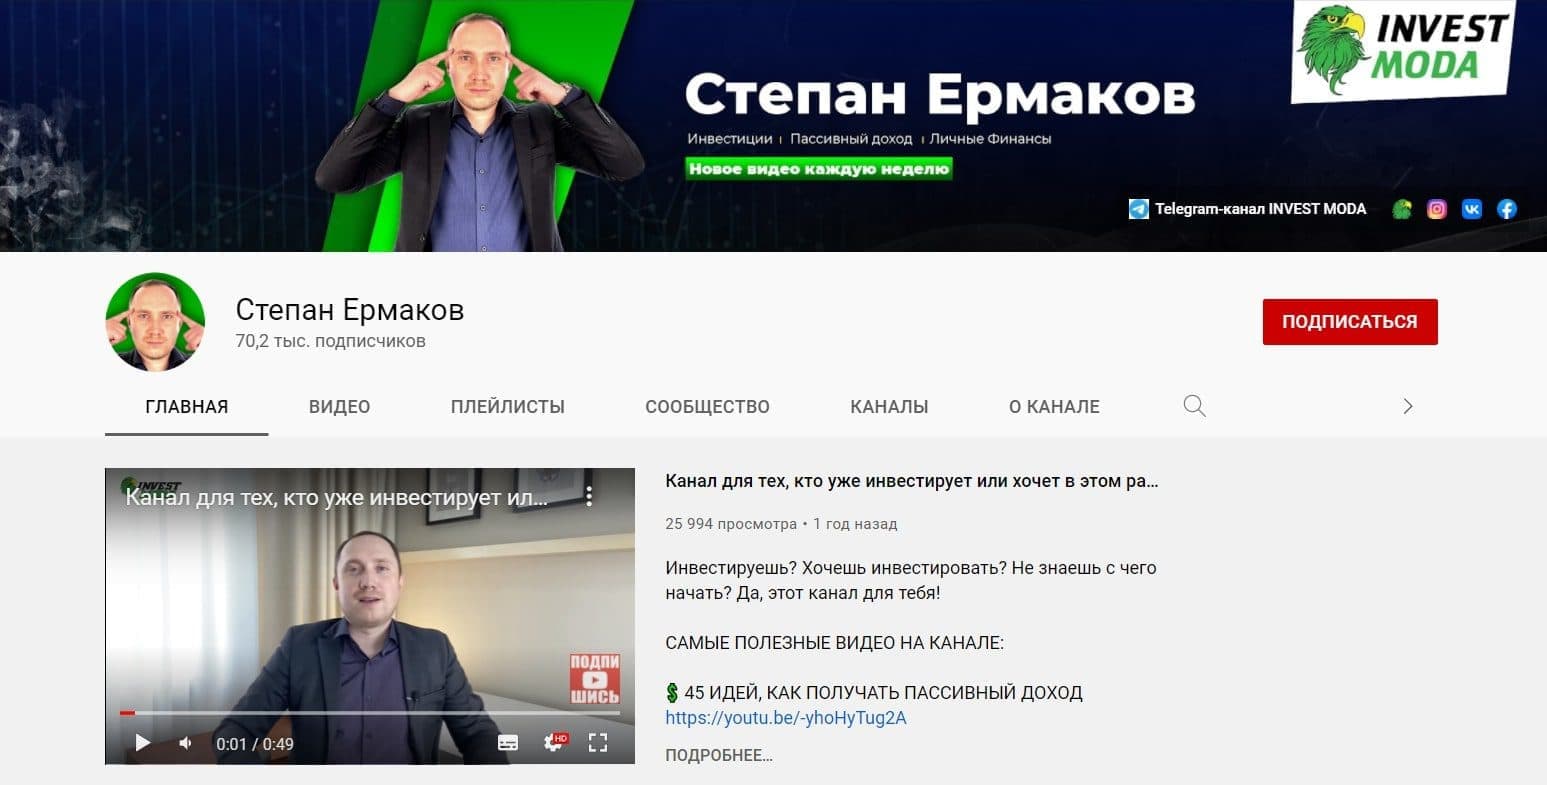 Ютуб канал Степана Ермакова